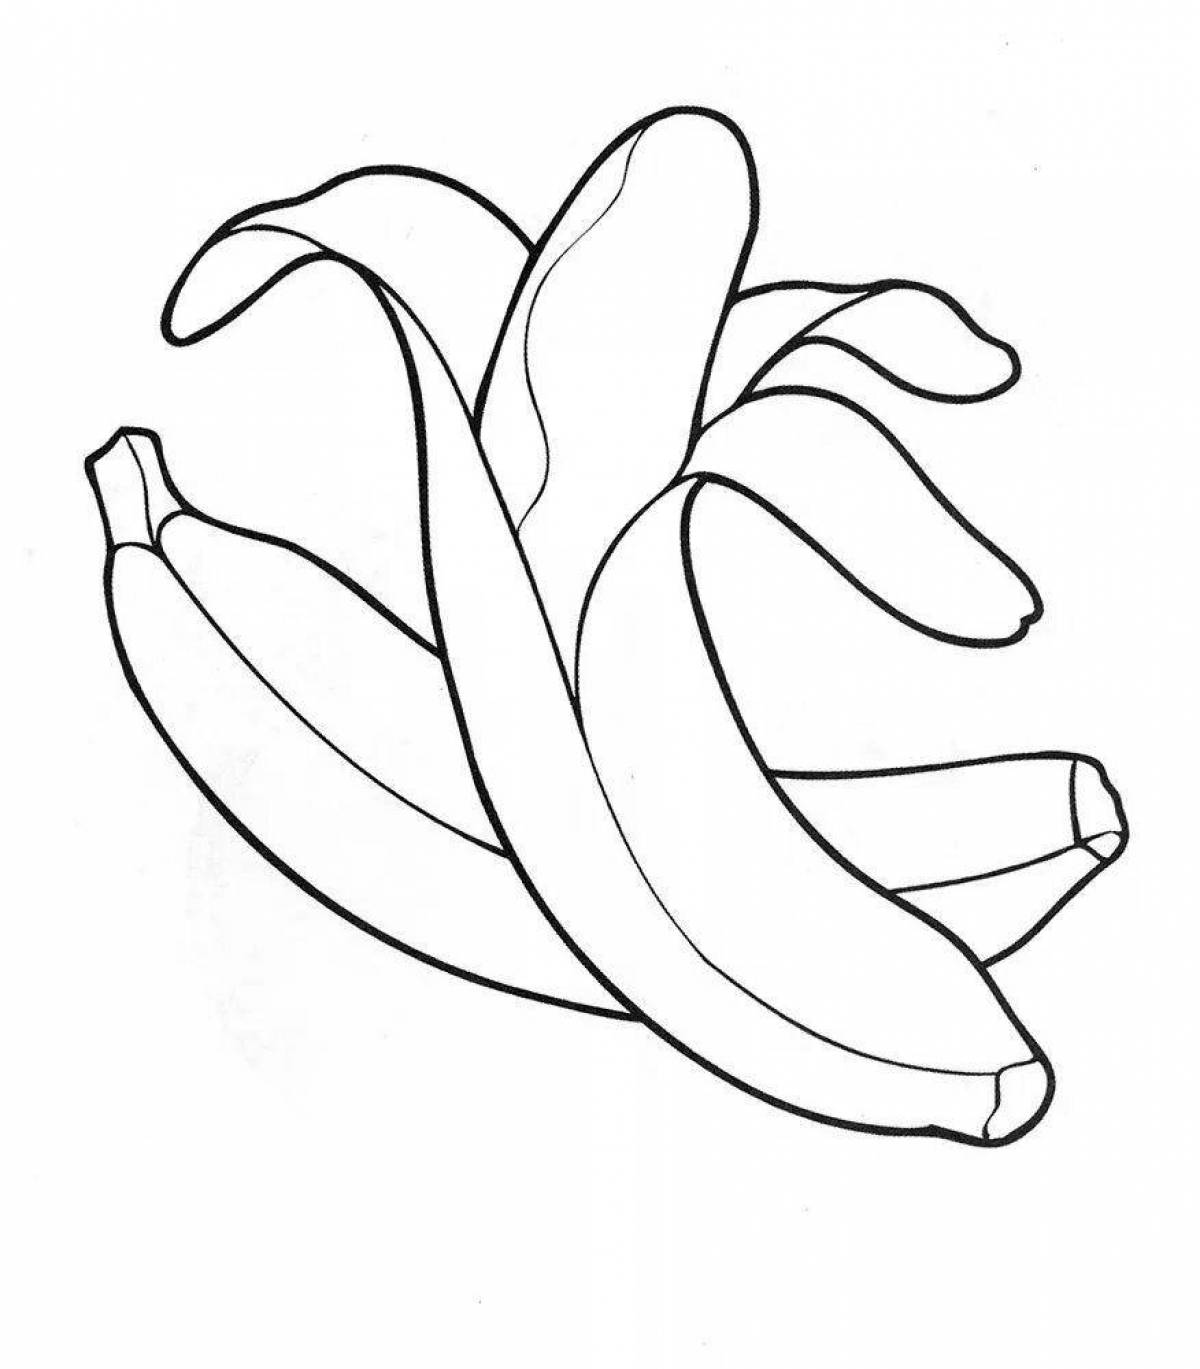 Rampant banana coloring page